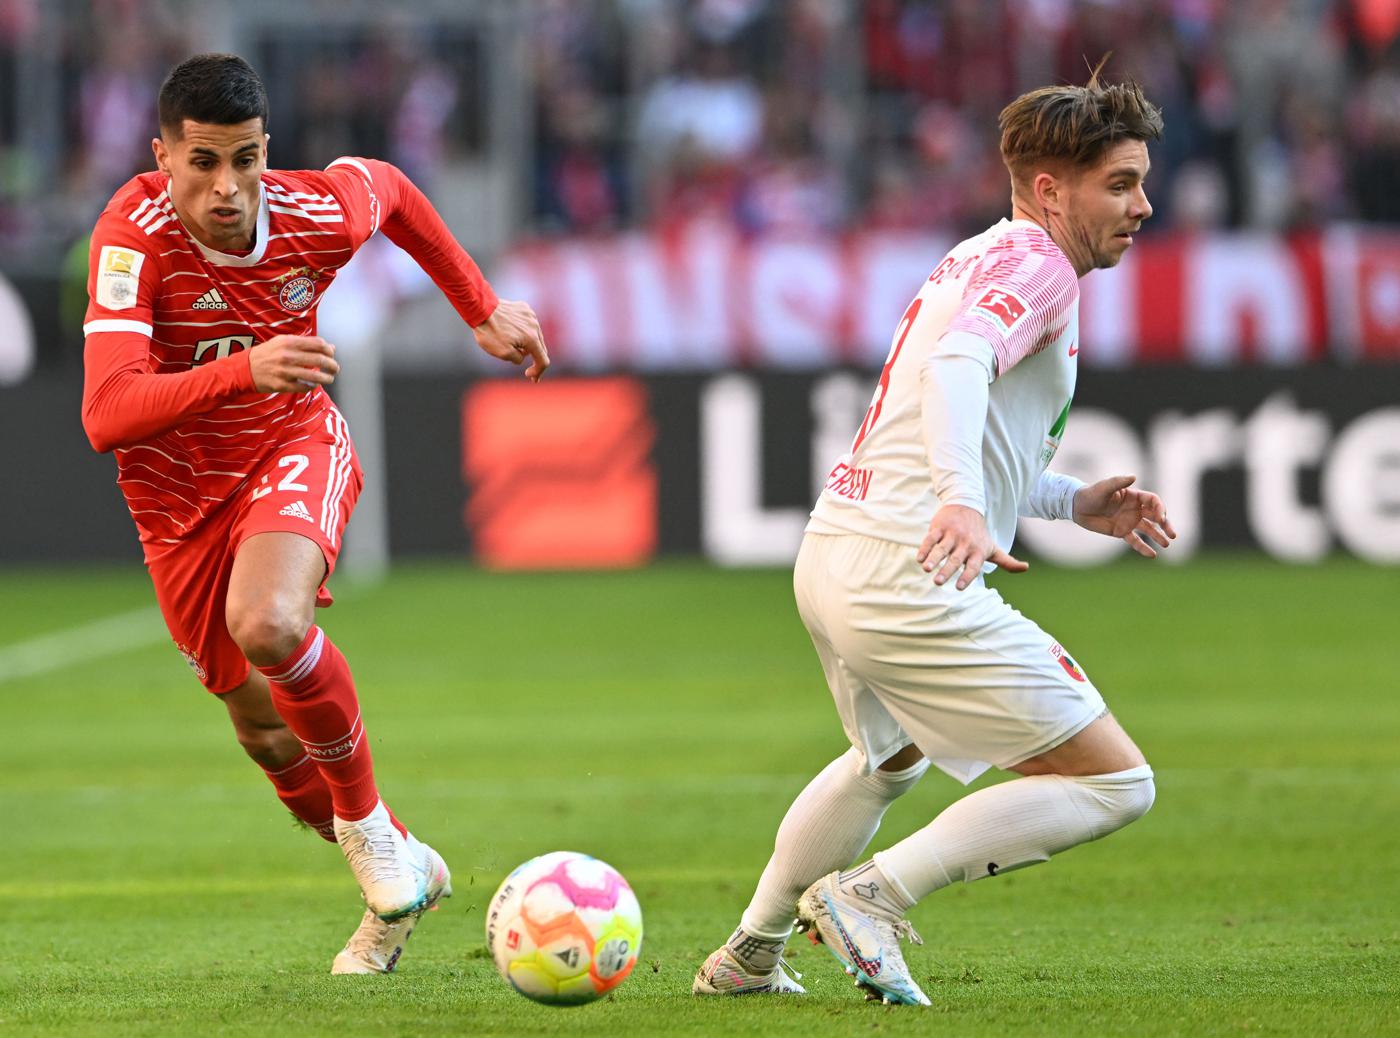 Bayern gegen Augsburg - 5-3. Deutsche Meisterschaft, 24. Runde. Spielbericht, Statistik.